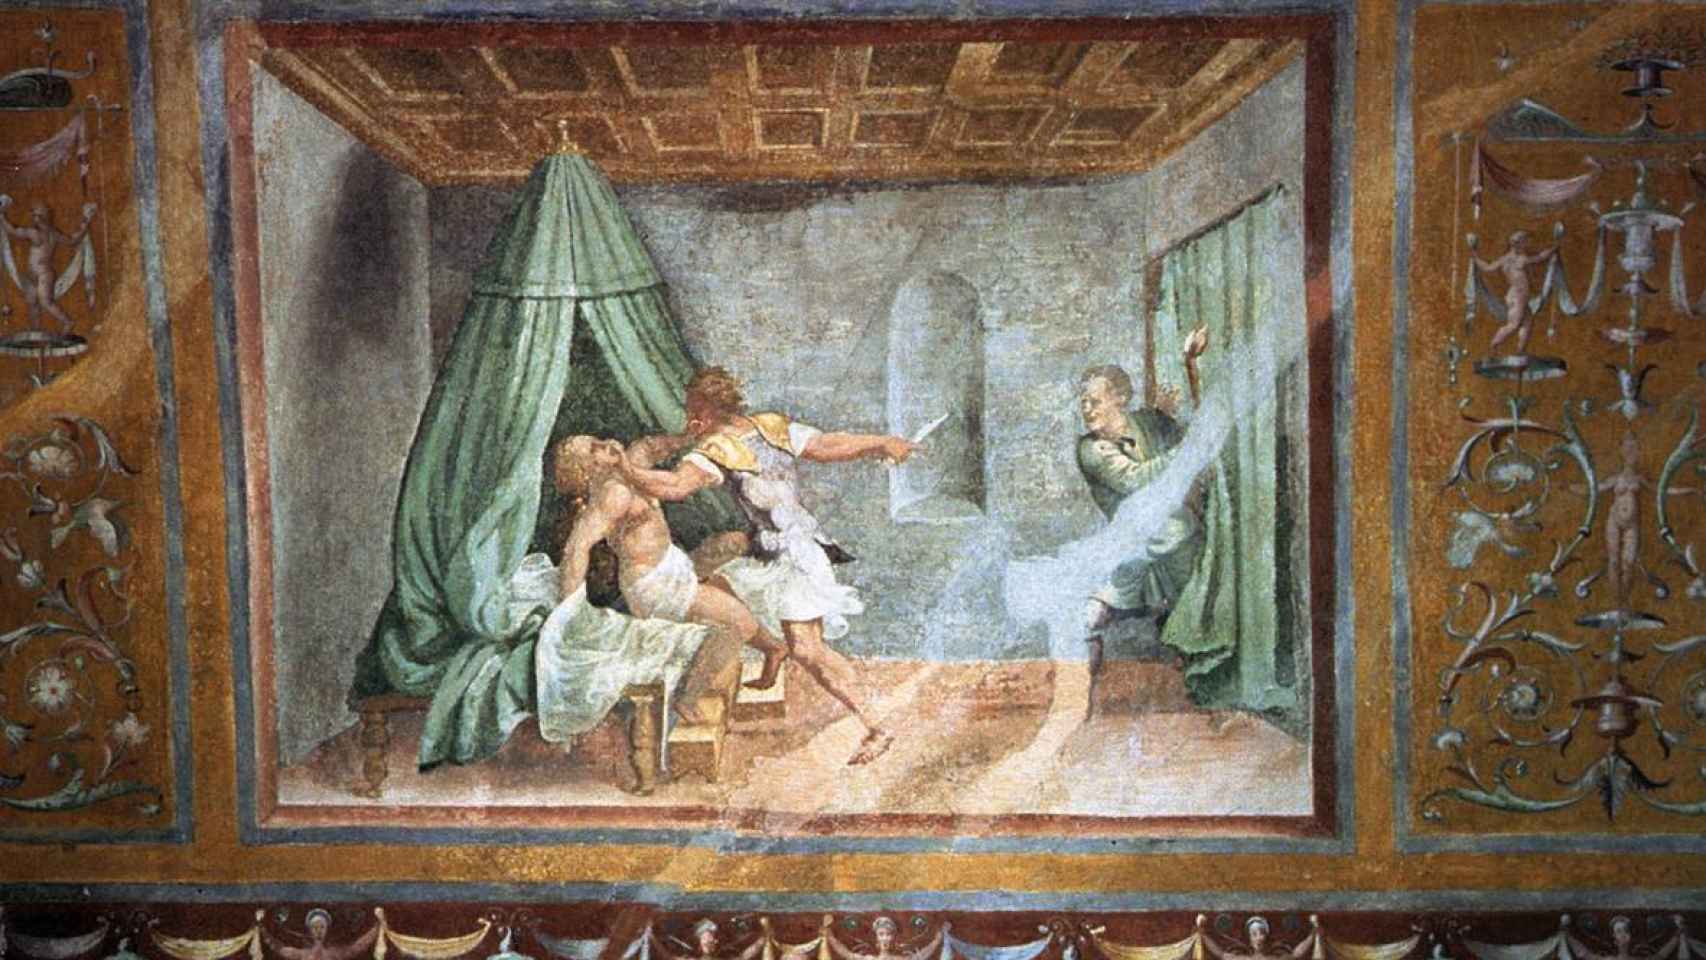 Sexto Tarquinio intenta violar a Lucrecia. Obra de Giulio Romano. Palacio Ducal de Mantua.